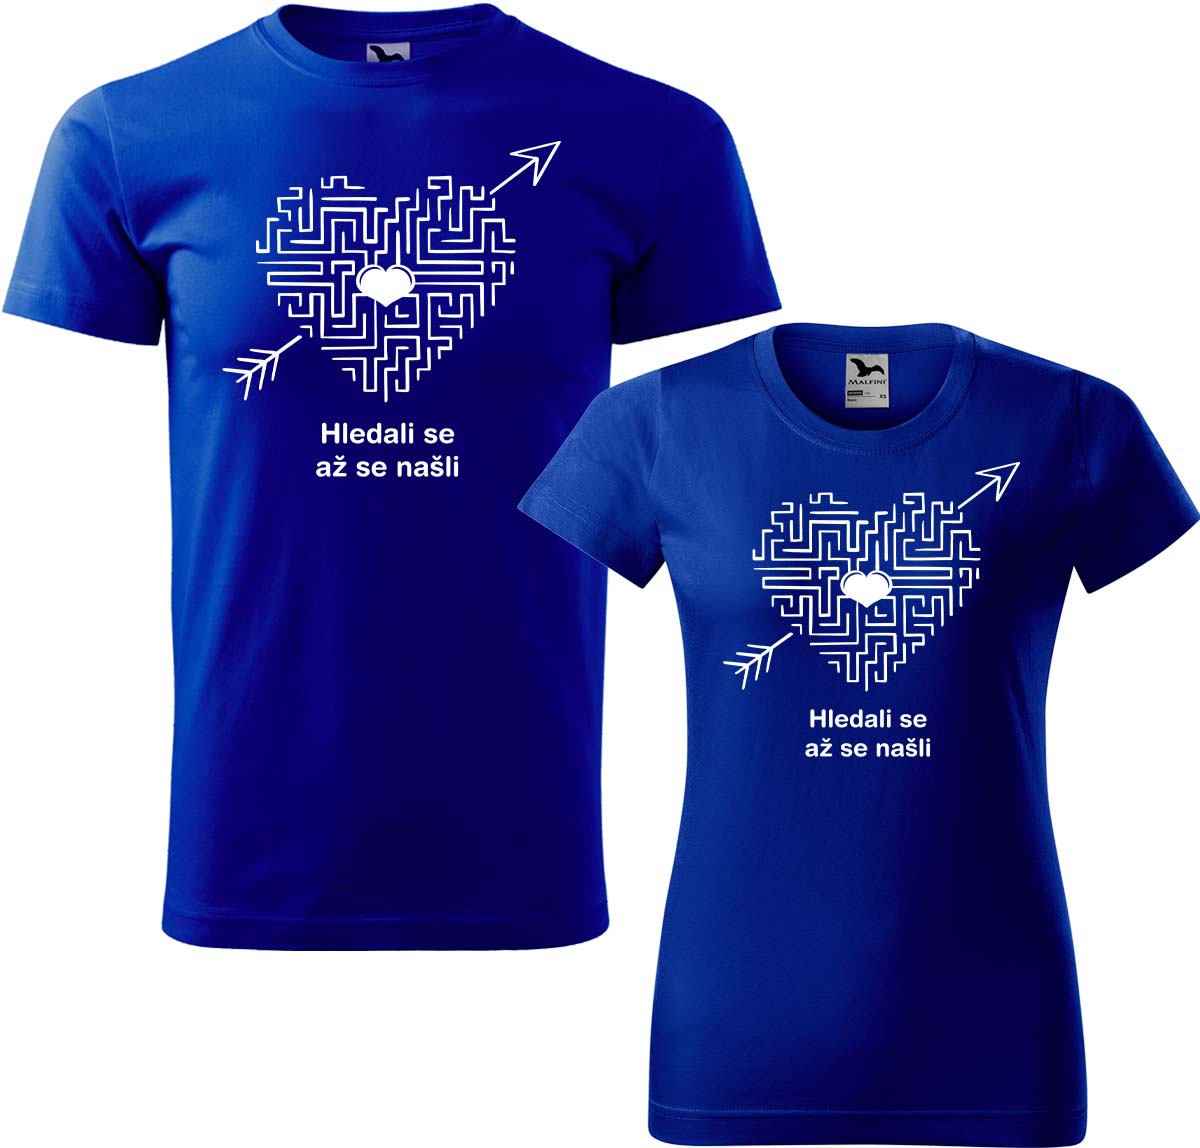 Trička pro páry - Hledali se, až se našli (srdce) Barva: Královská modrá (05), Velikost dámské tričko: 3XL, Velikost pánské tričko: L